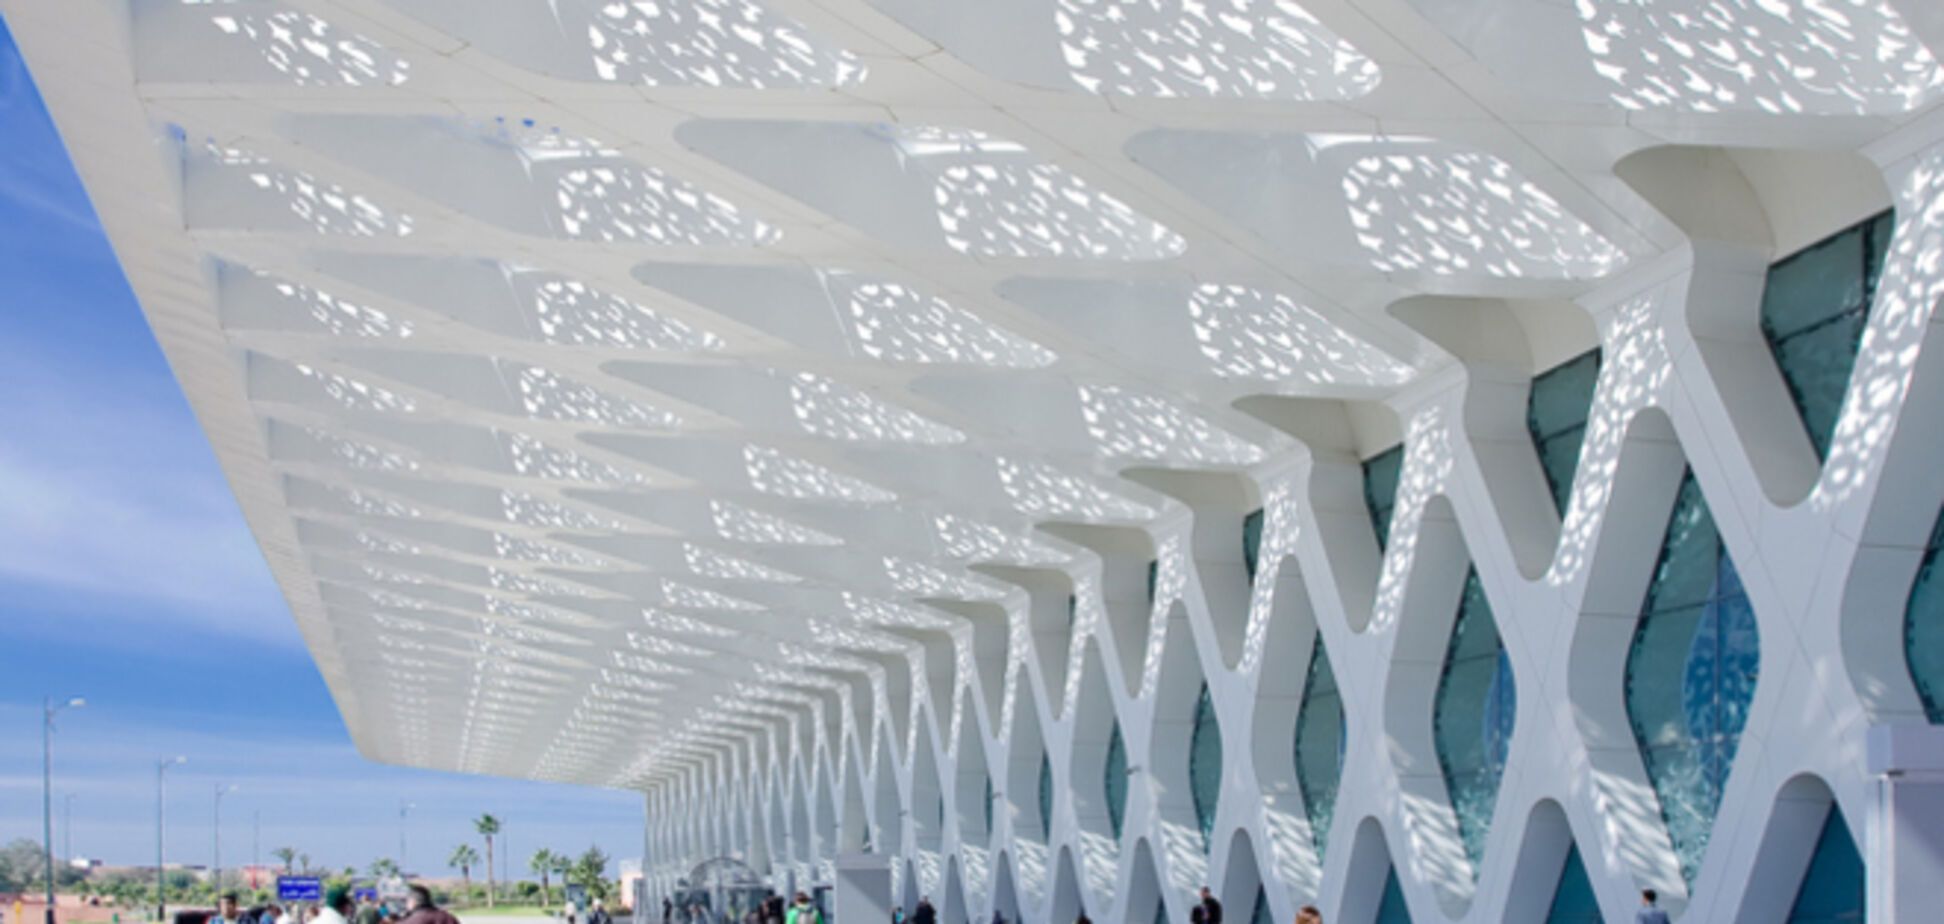 10 самых потрясающих аэропортов в мире, из которых не захочется улетать